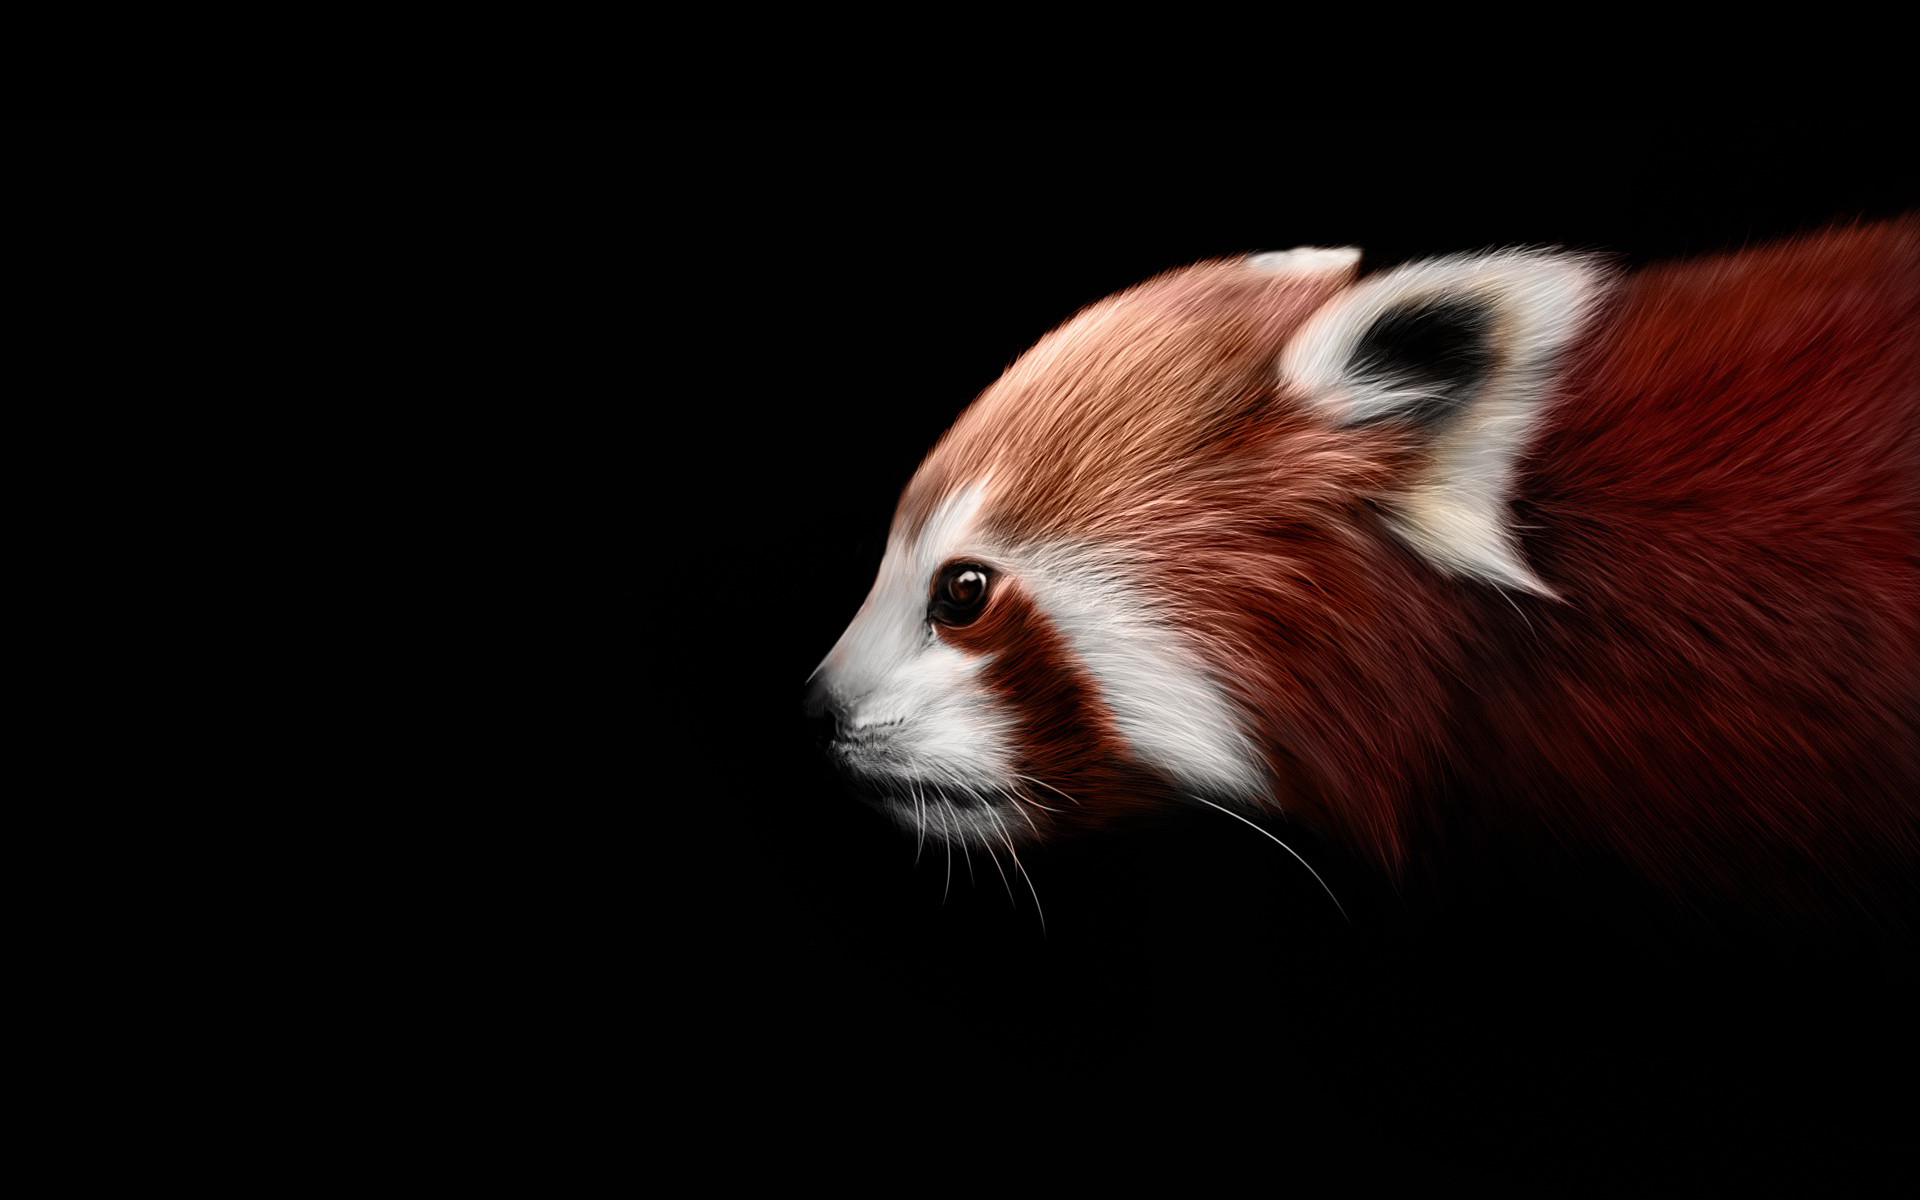 Red panda artwork